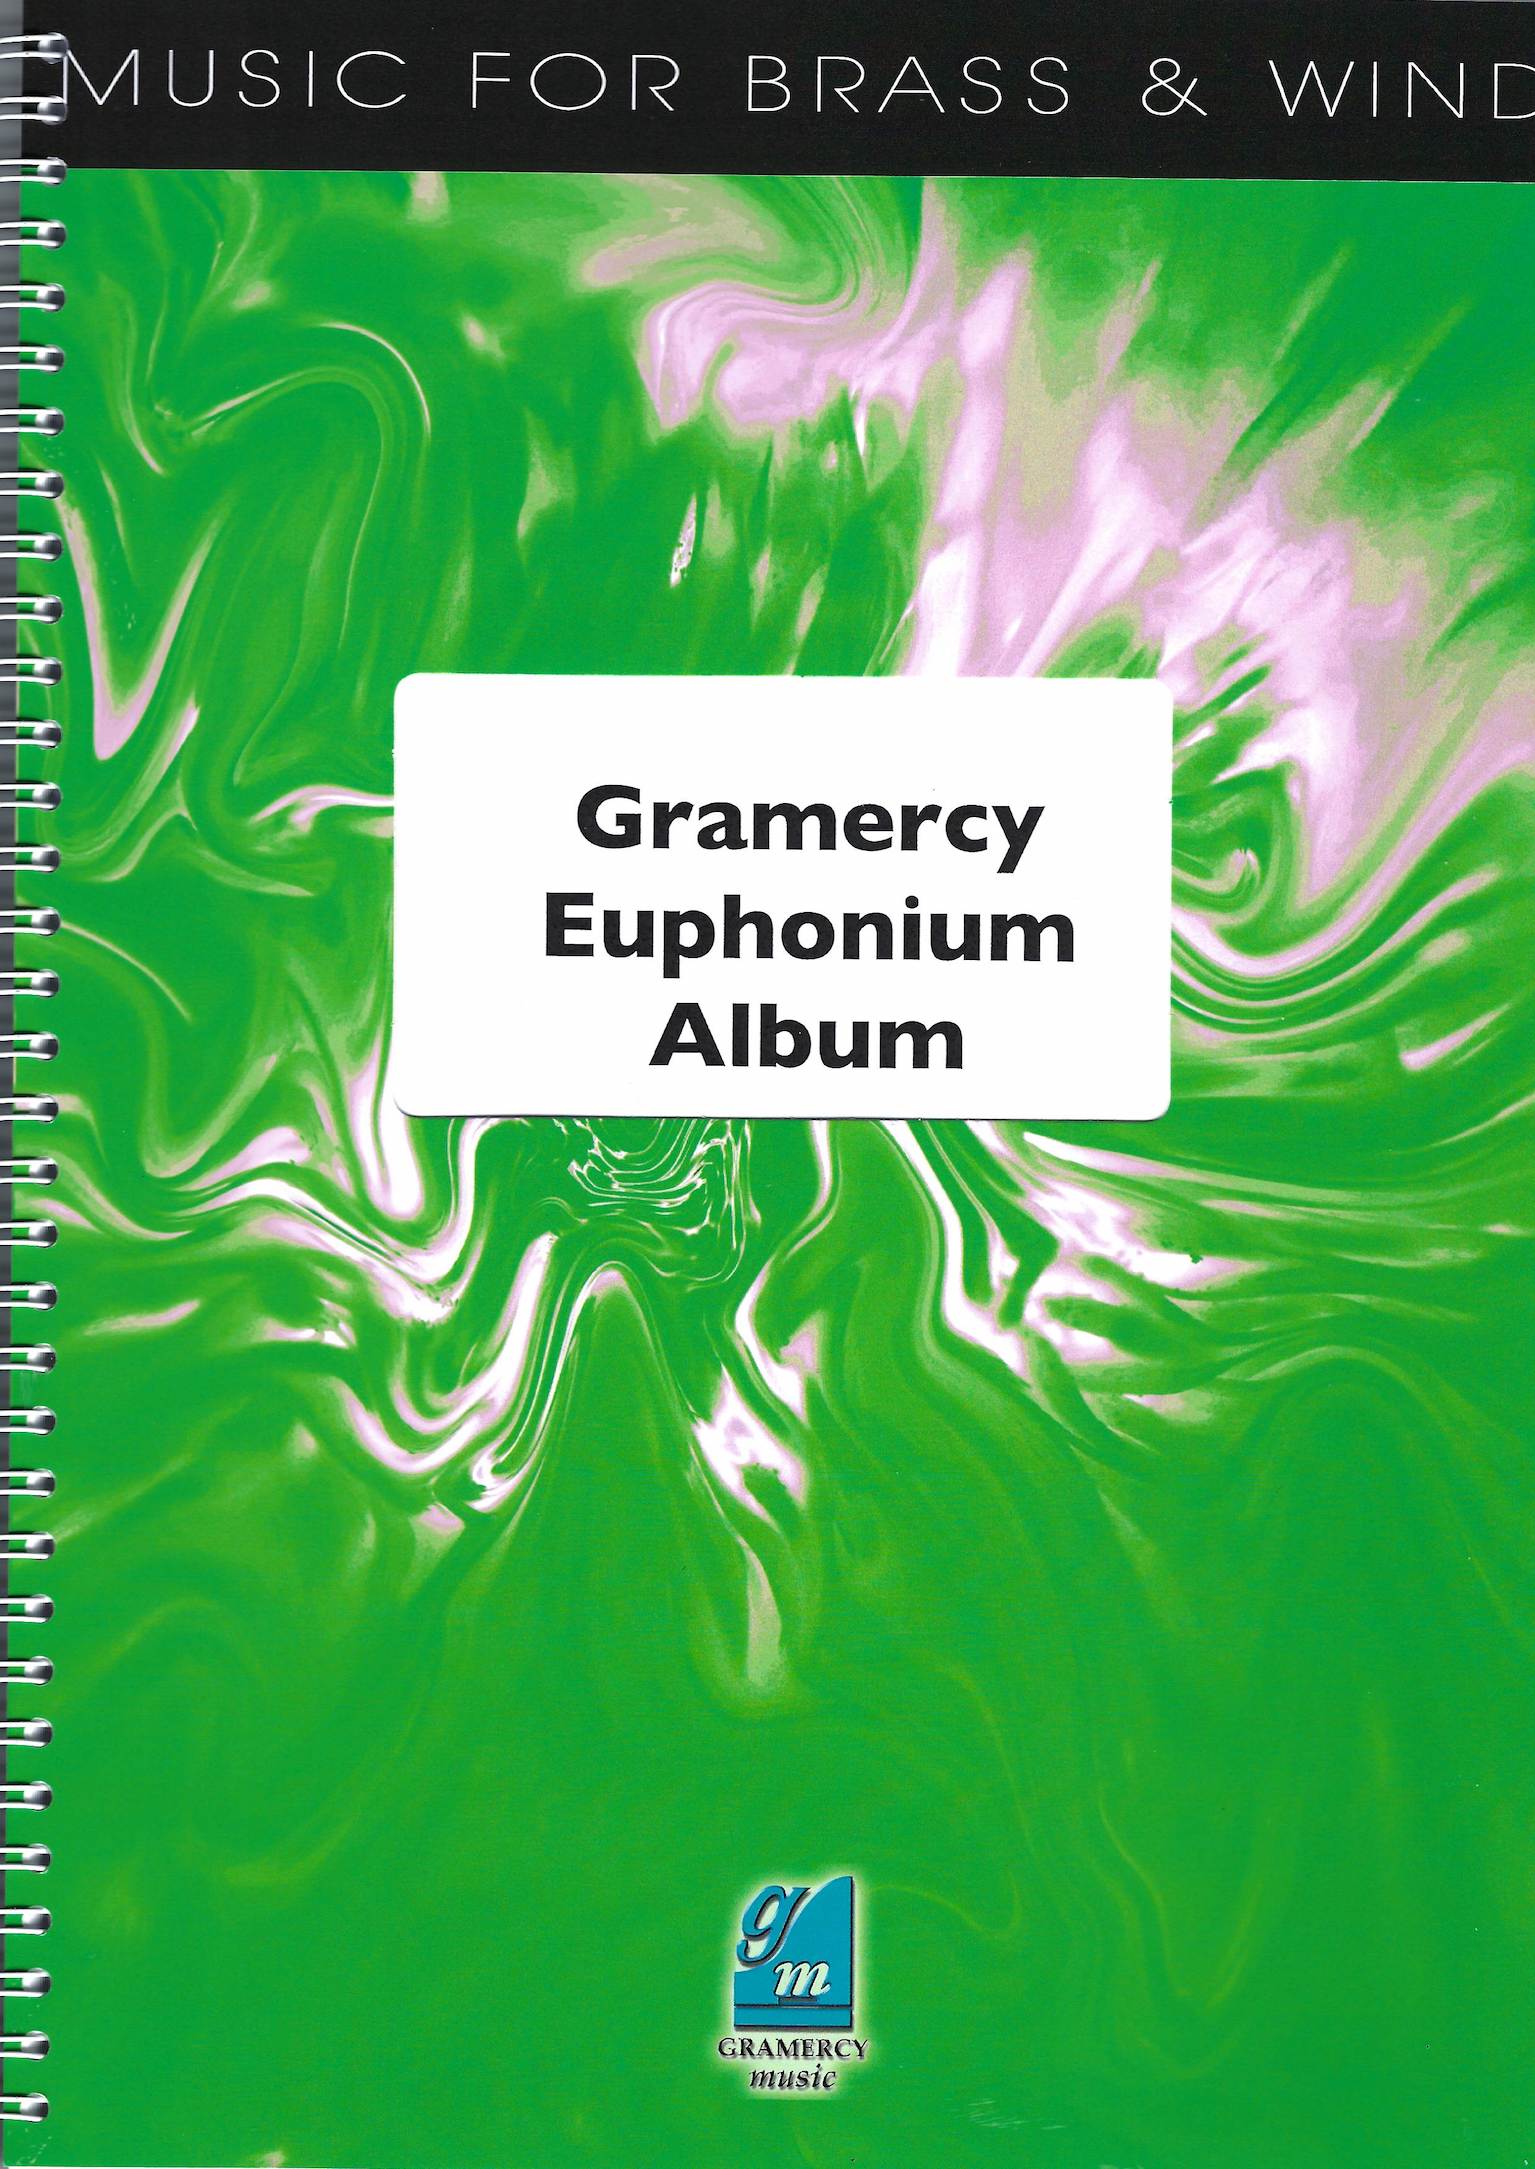 Gramercy Euphonium Album (4 extended solos) - Peter Graham - Euphonium and Piano